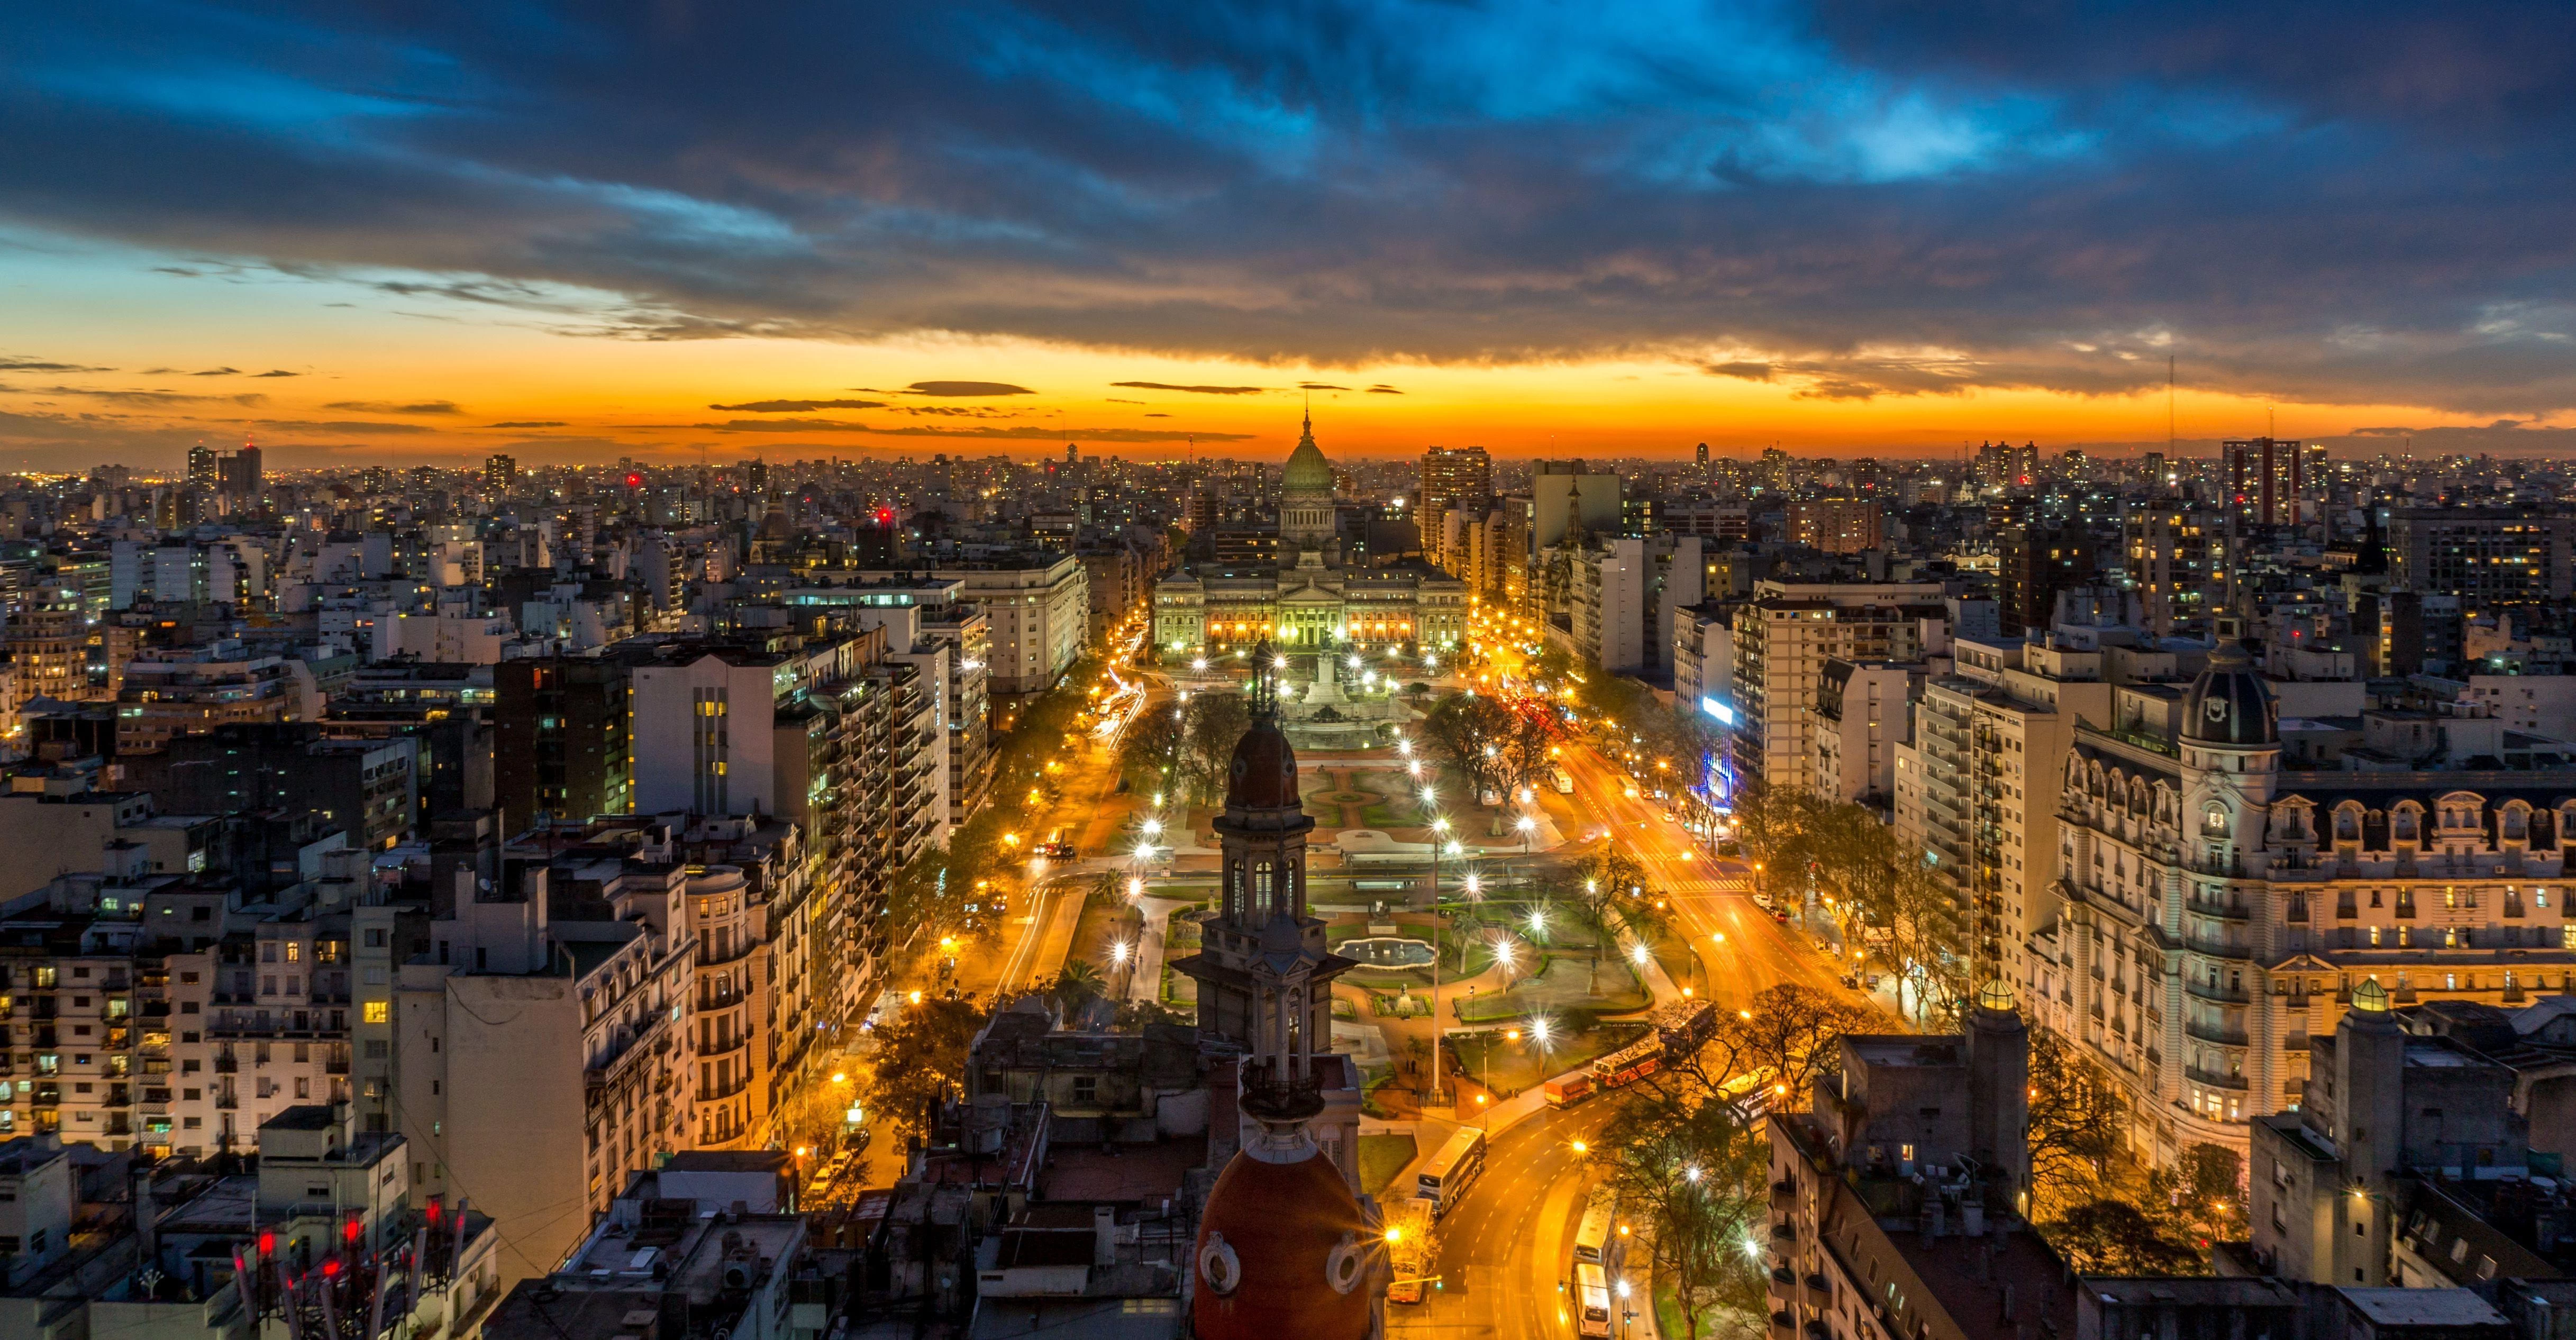 El encanto de la ciudad de Buenos Aires